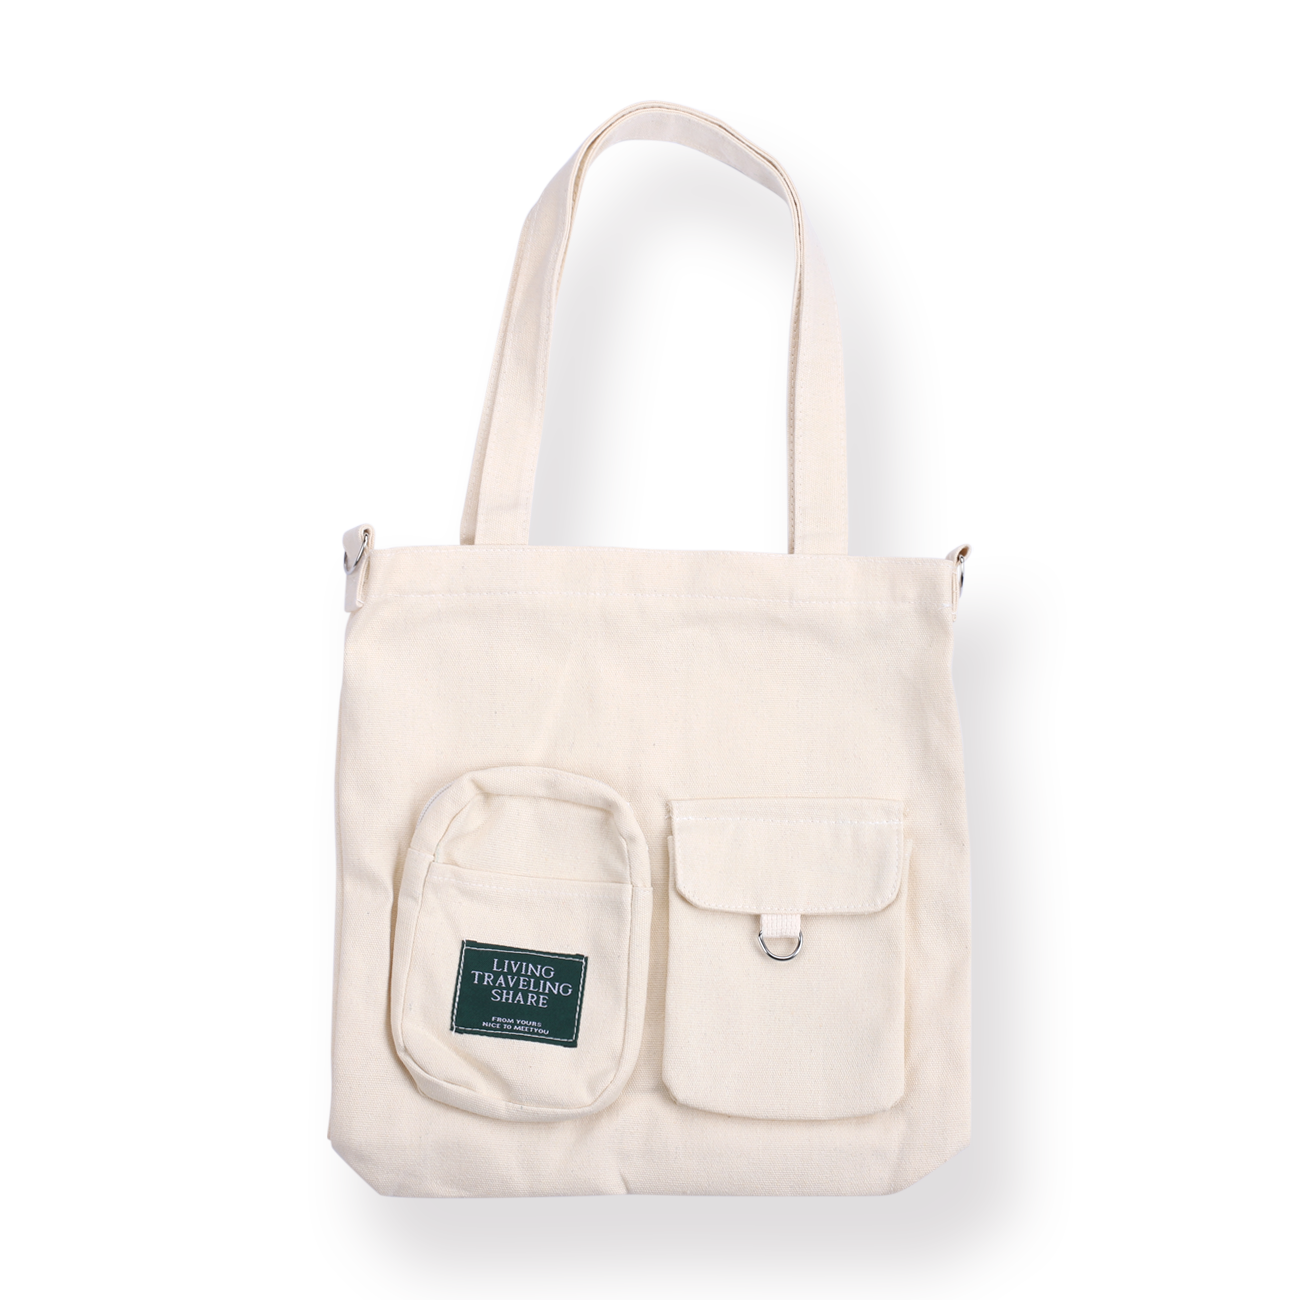 Campus Shoulder Bag - White - Stationery Pal